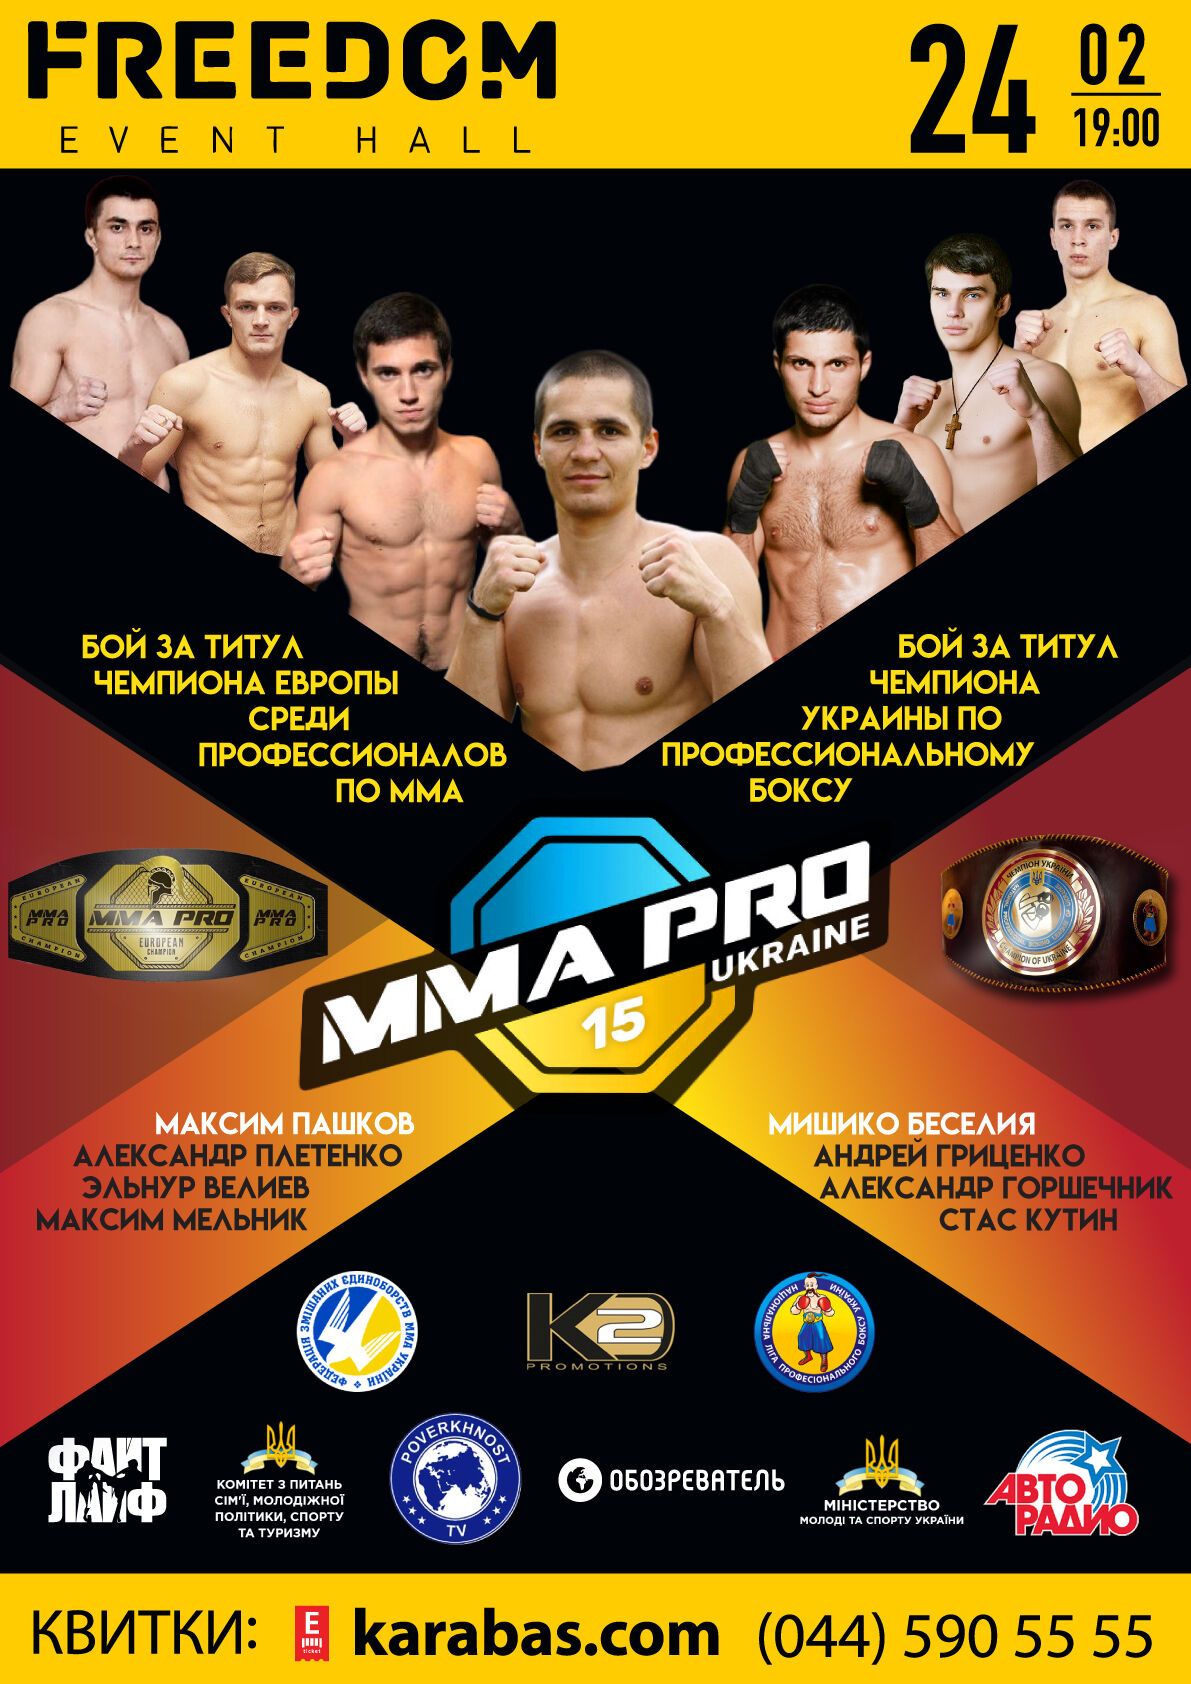 Двойной удар: на турнире MMA PRO Ukraine 15 решится судьба двух чемпионских поясов